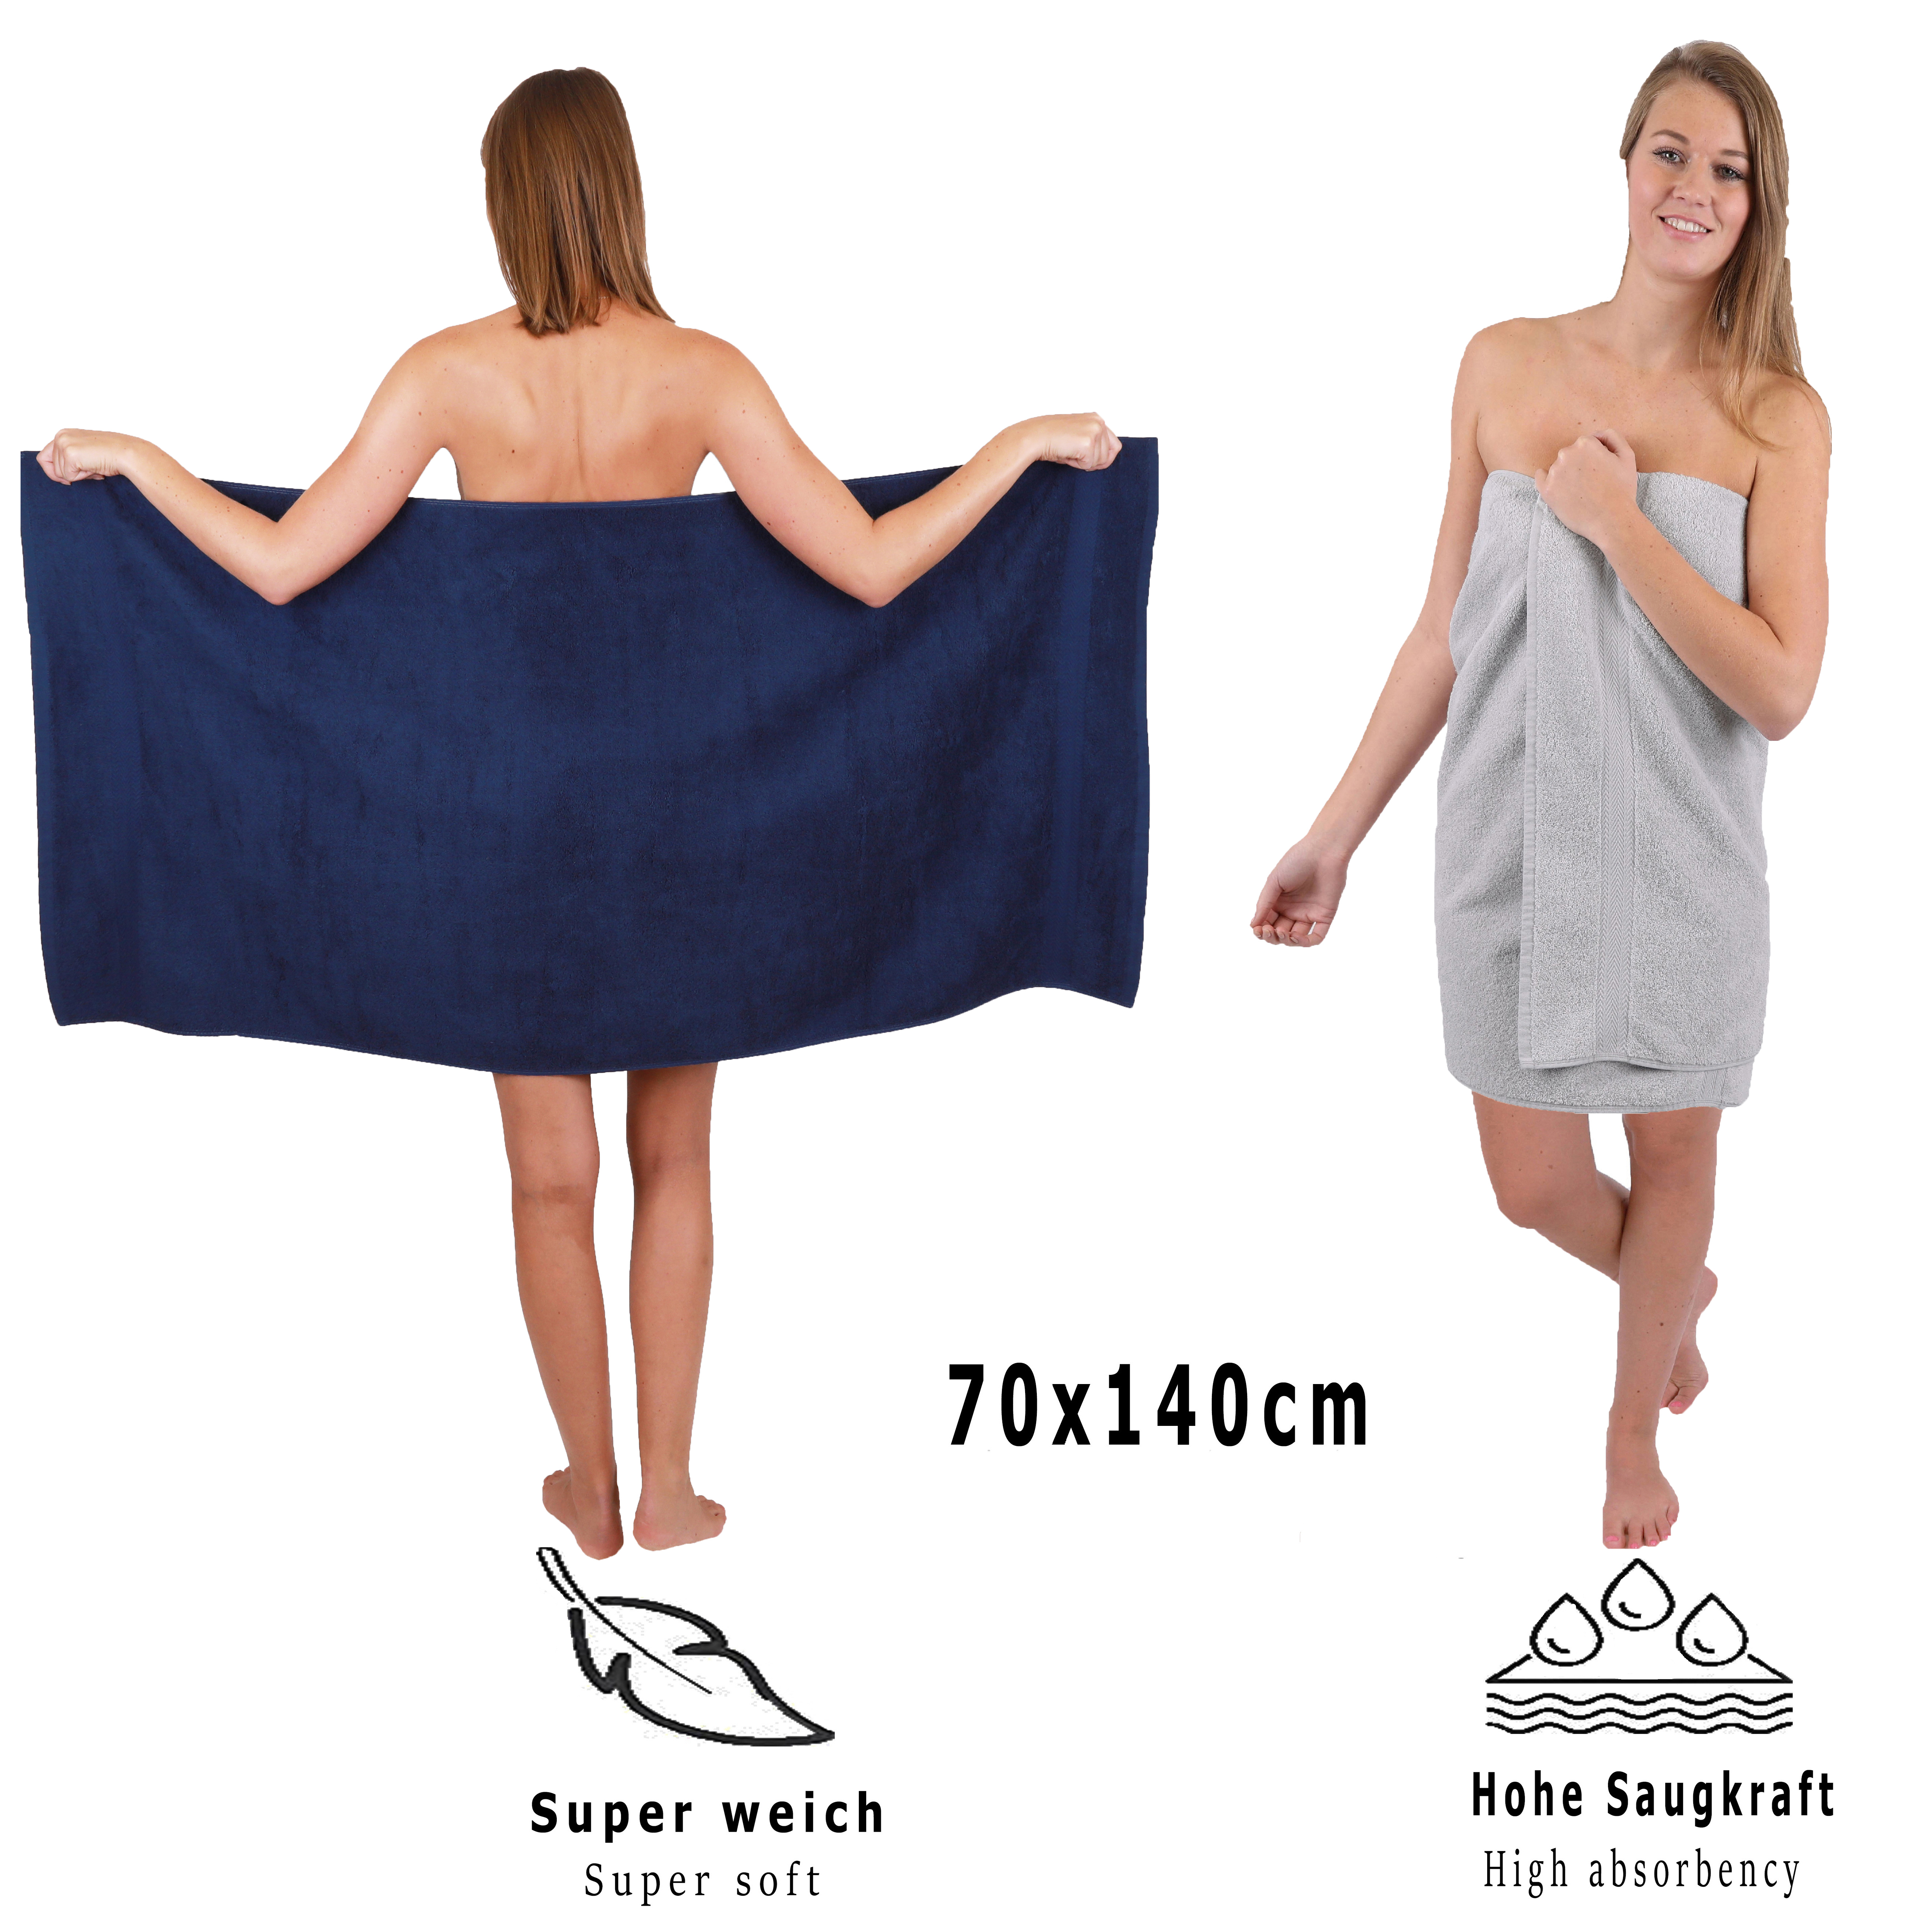 Rams - Pack de 2 toallas de lavabo en algodón, color azul marino, 50 x 100  cm, juego de toallas, suaves, altamente absorbentse